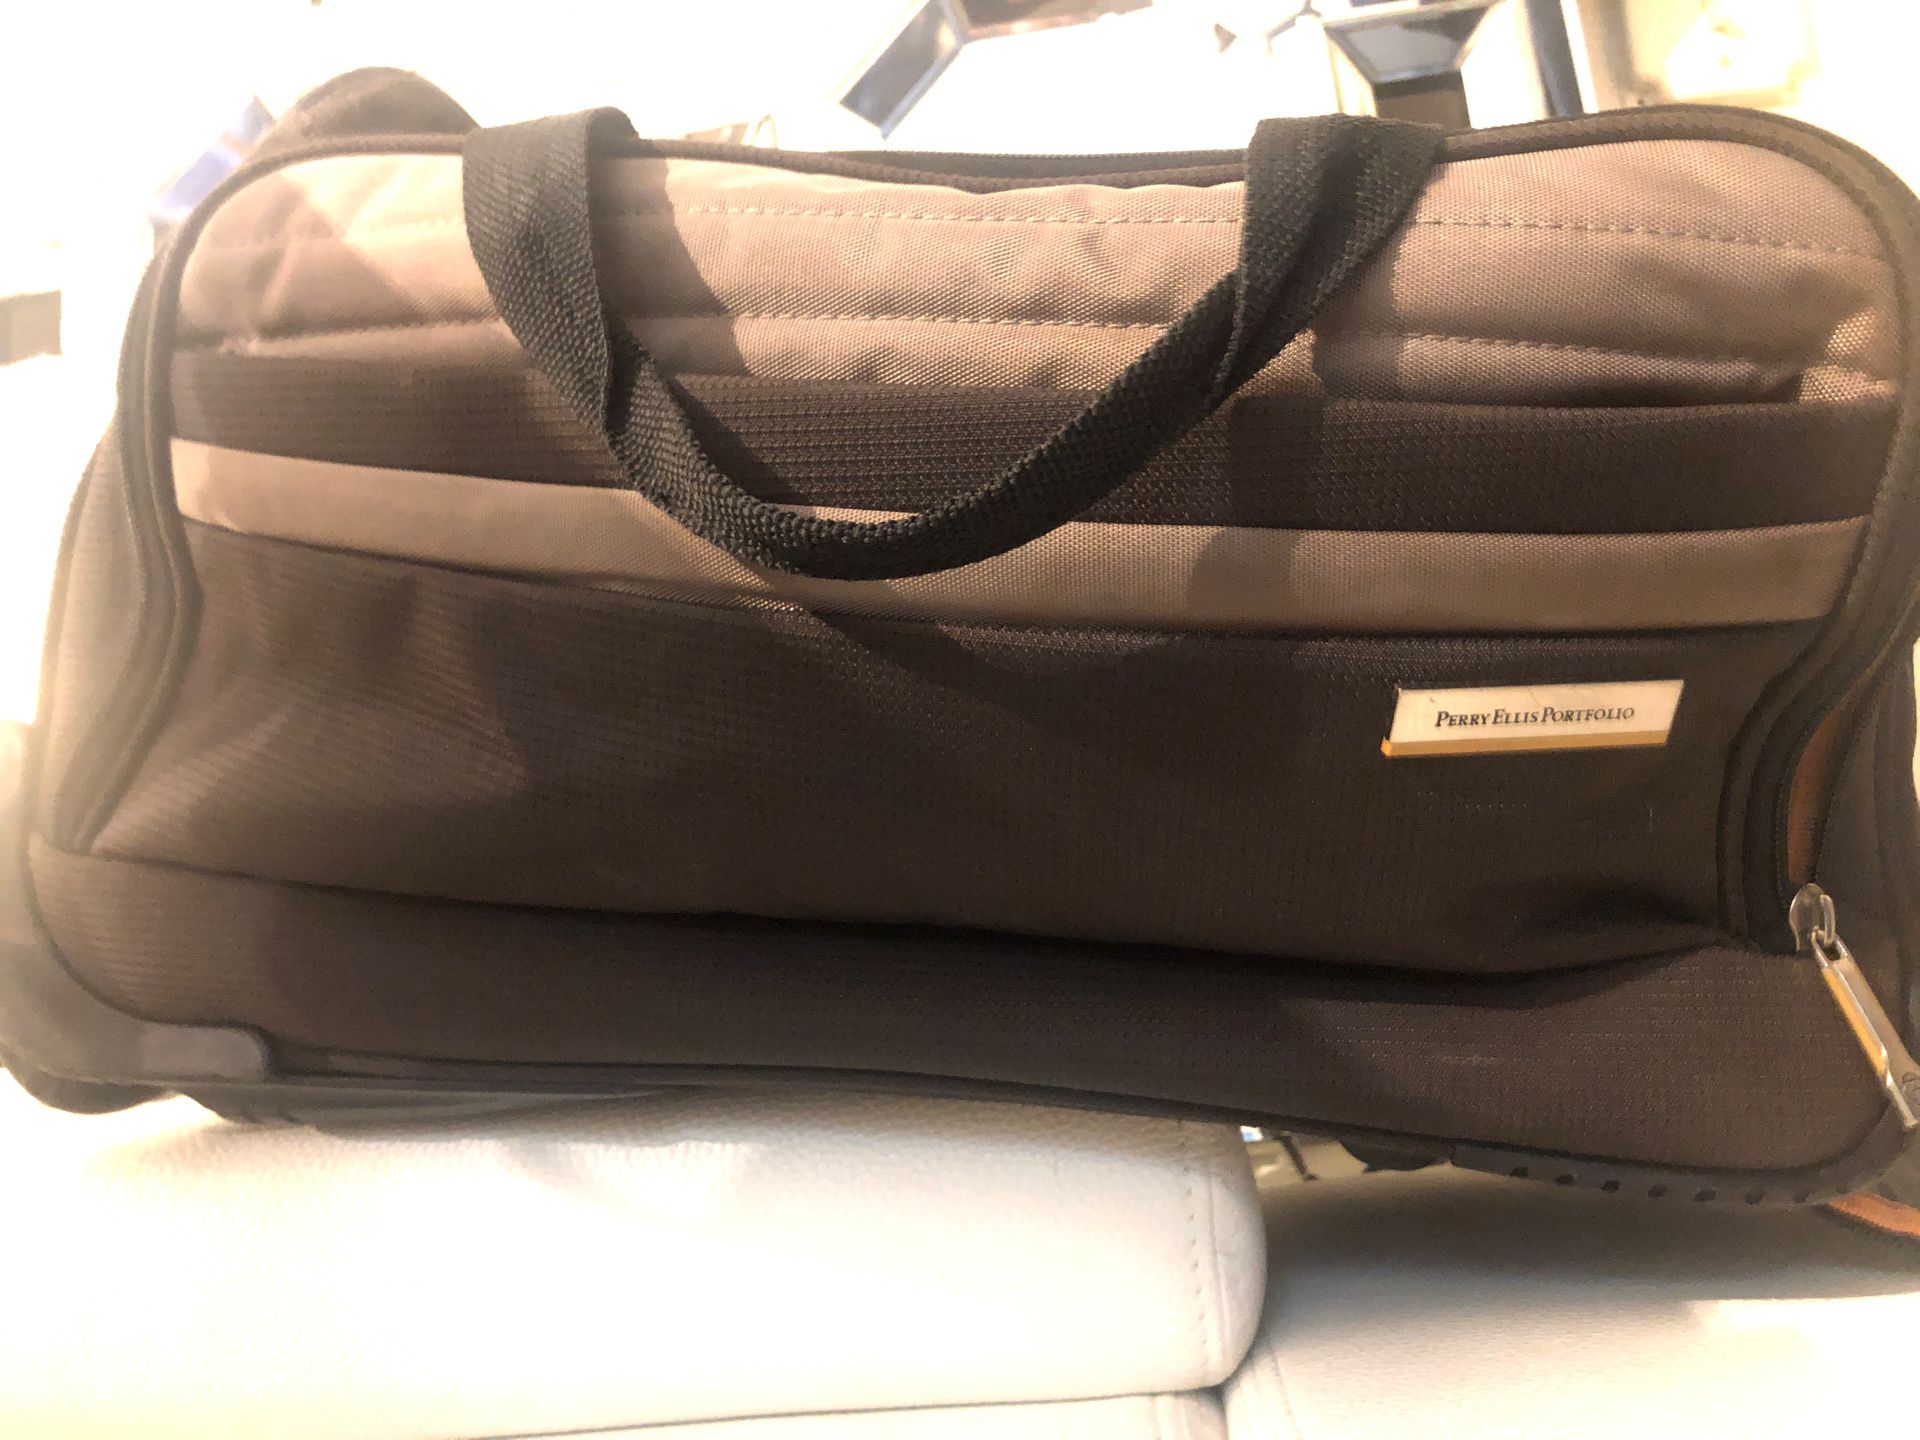 Beautiful duffel bag Perry Ellis - like new - has wheels